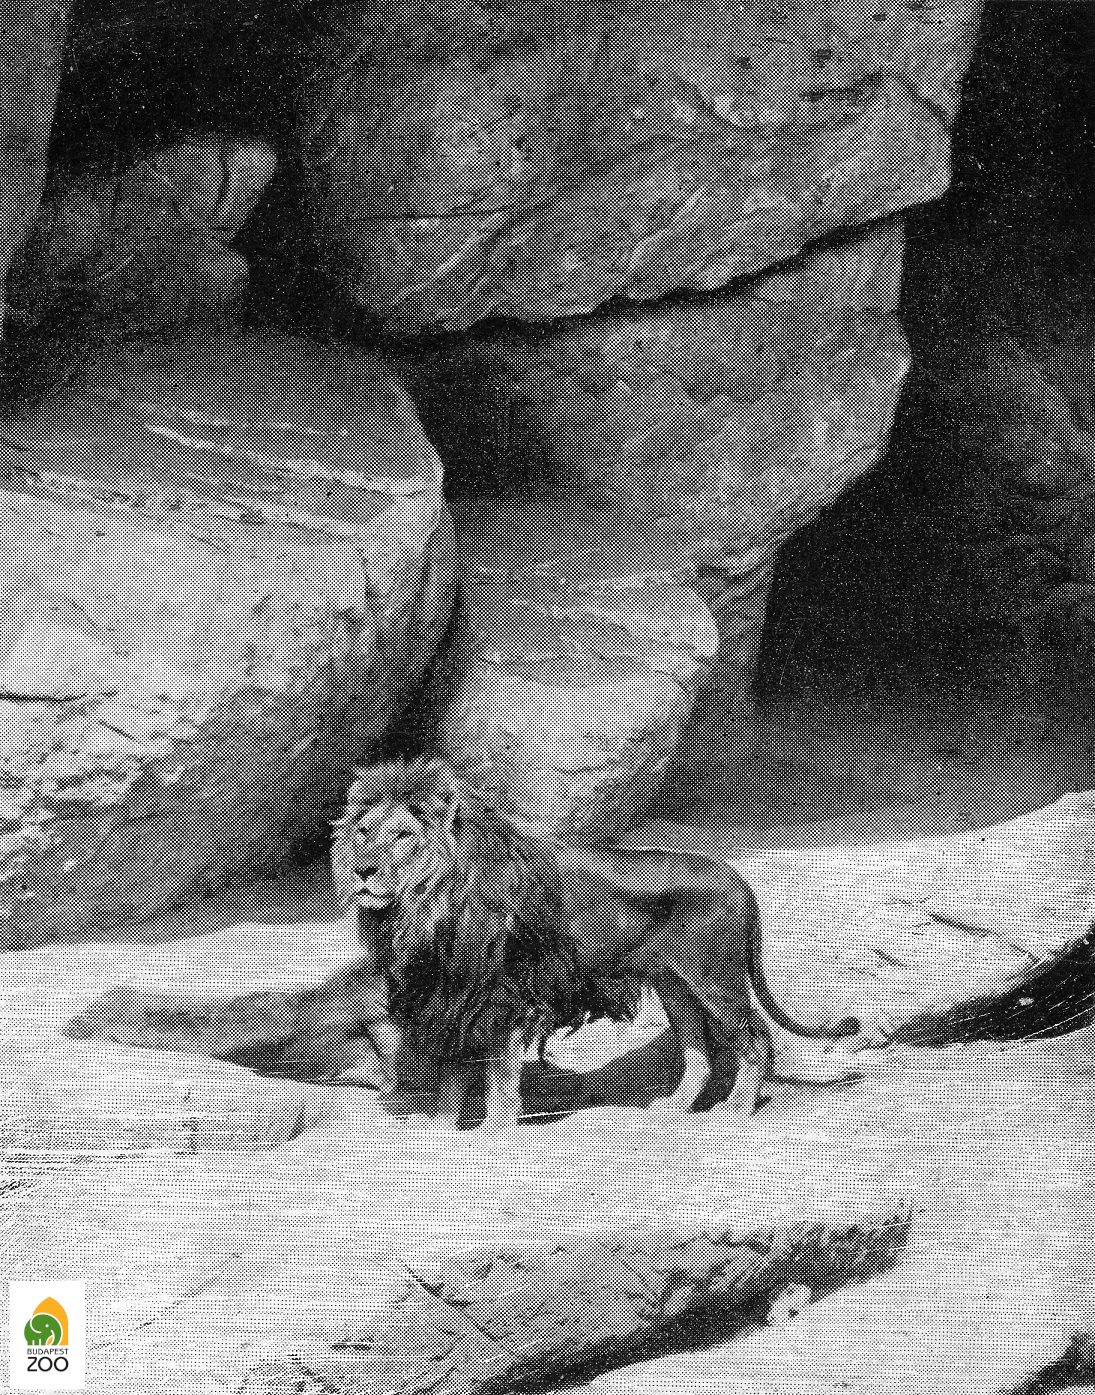 03 - Leo, az 1911-ben érkezett hím berber oroszlán. A felvétel 1914 táján készülhetett